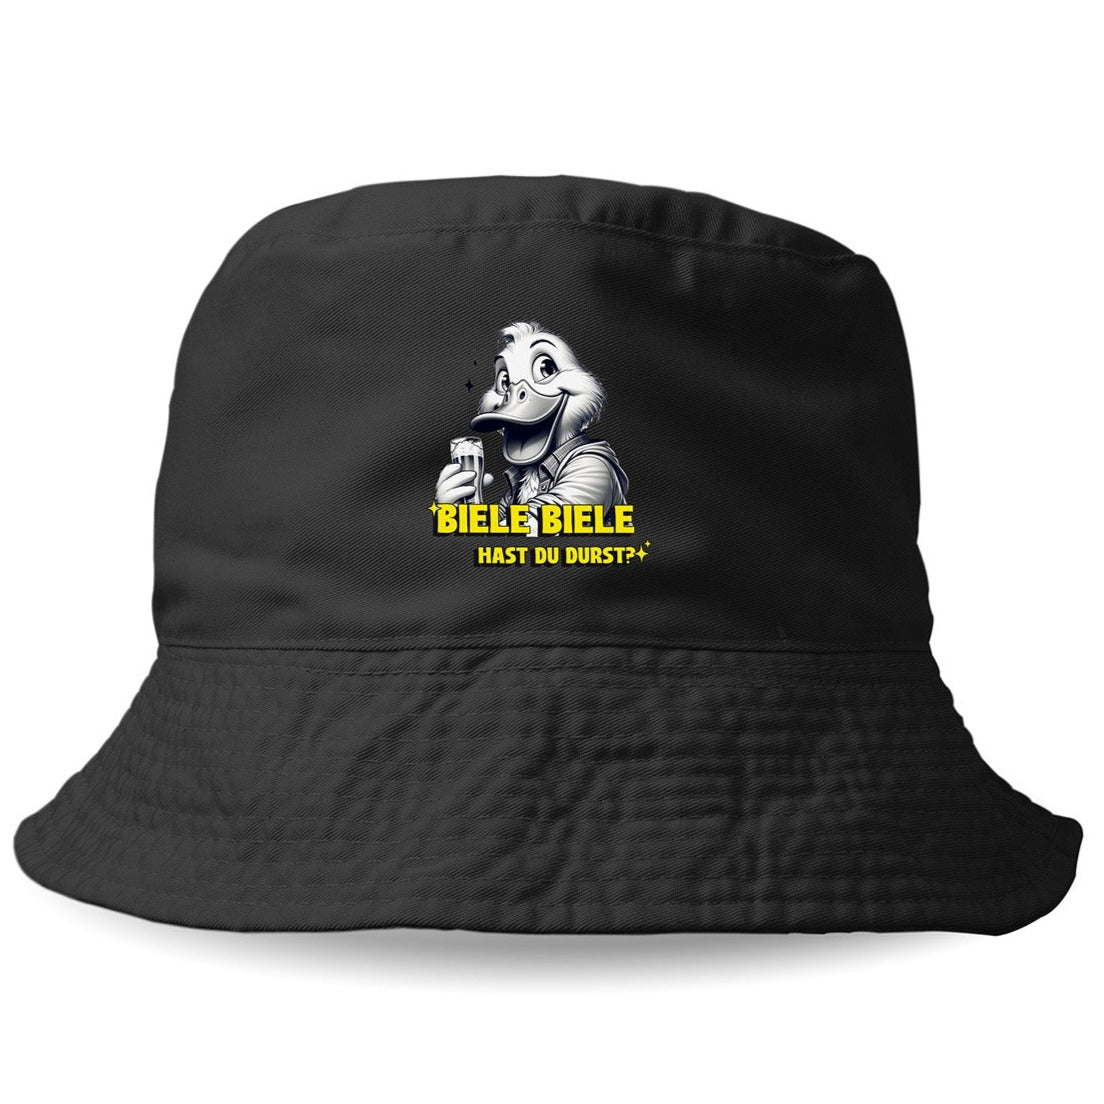 BIELE BIELE - Bucket Hat